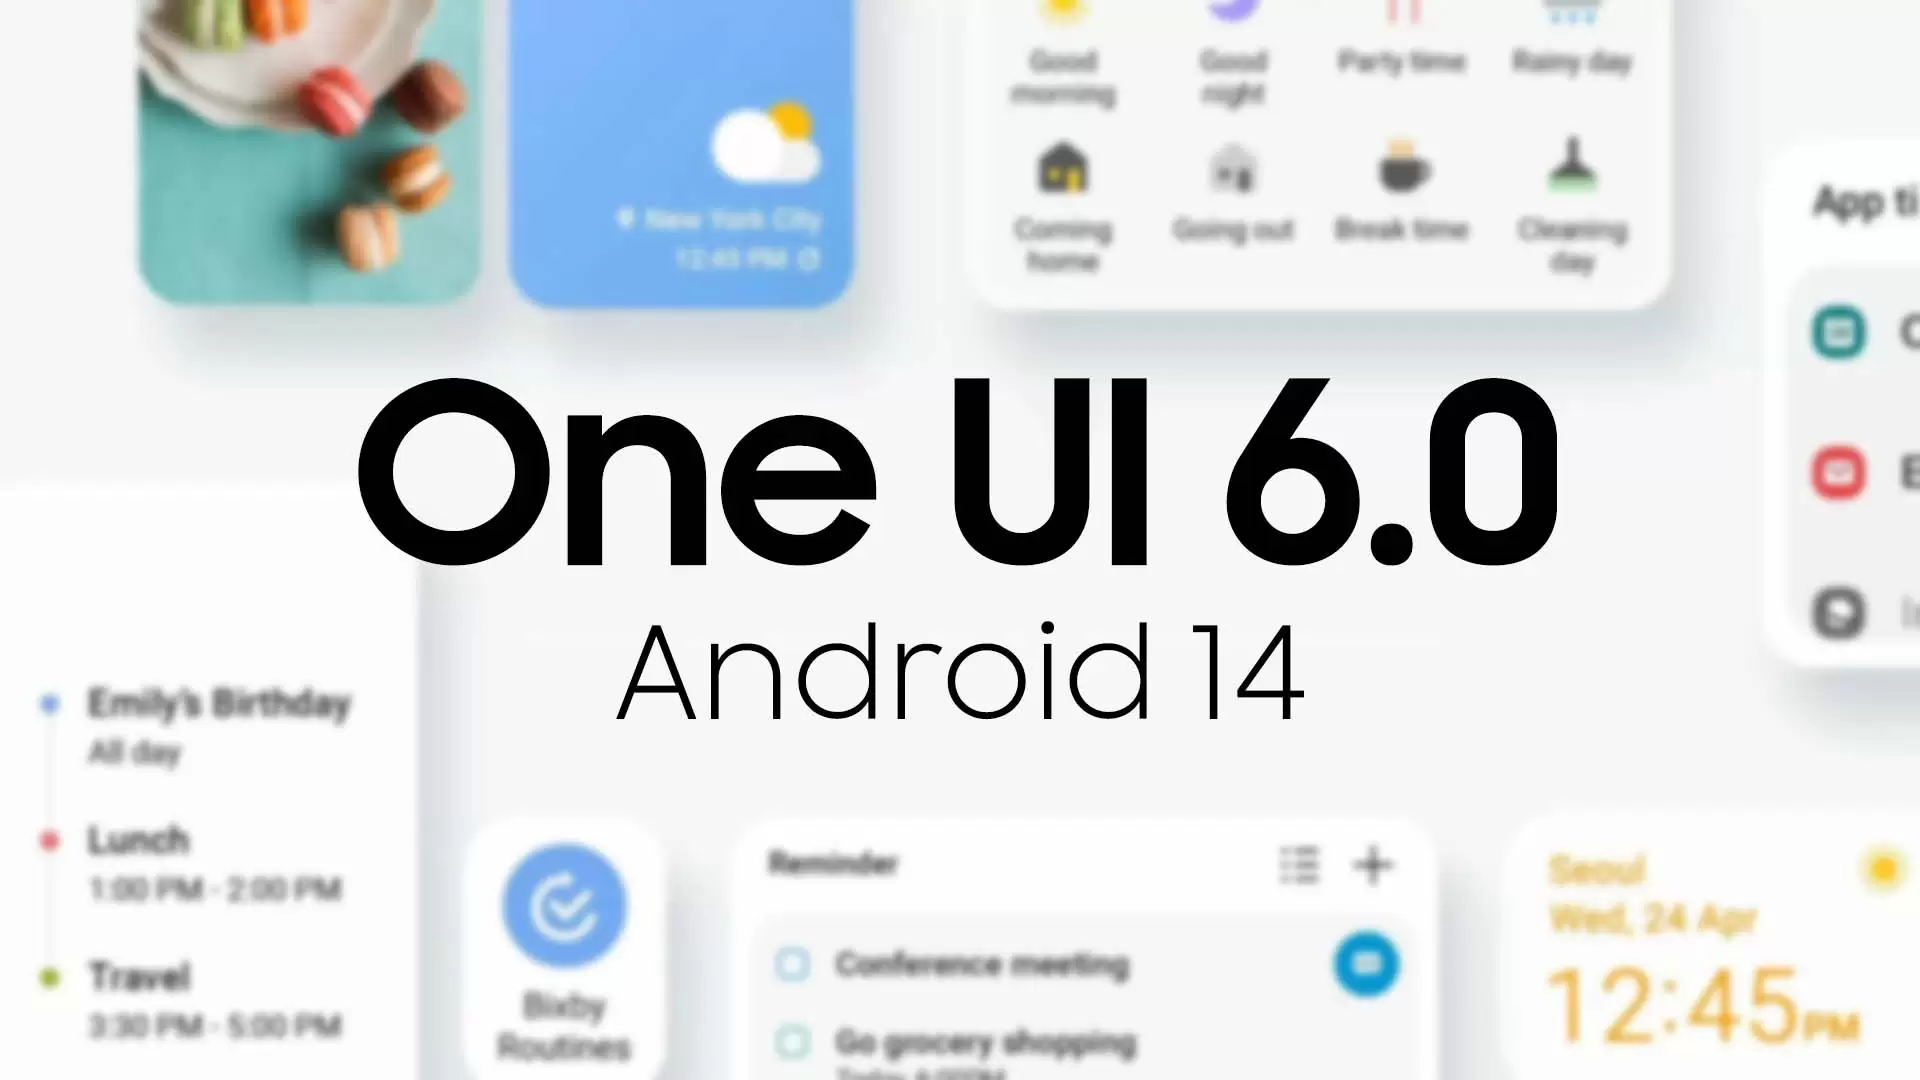 Samsung One UI 6.0 İle Android 14 Takvimine Son Şeklini Verdi!